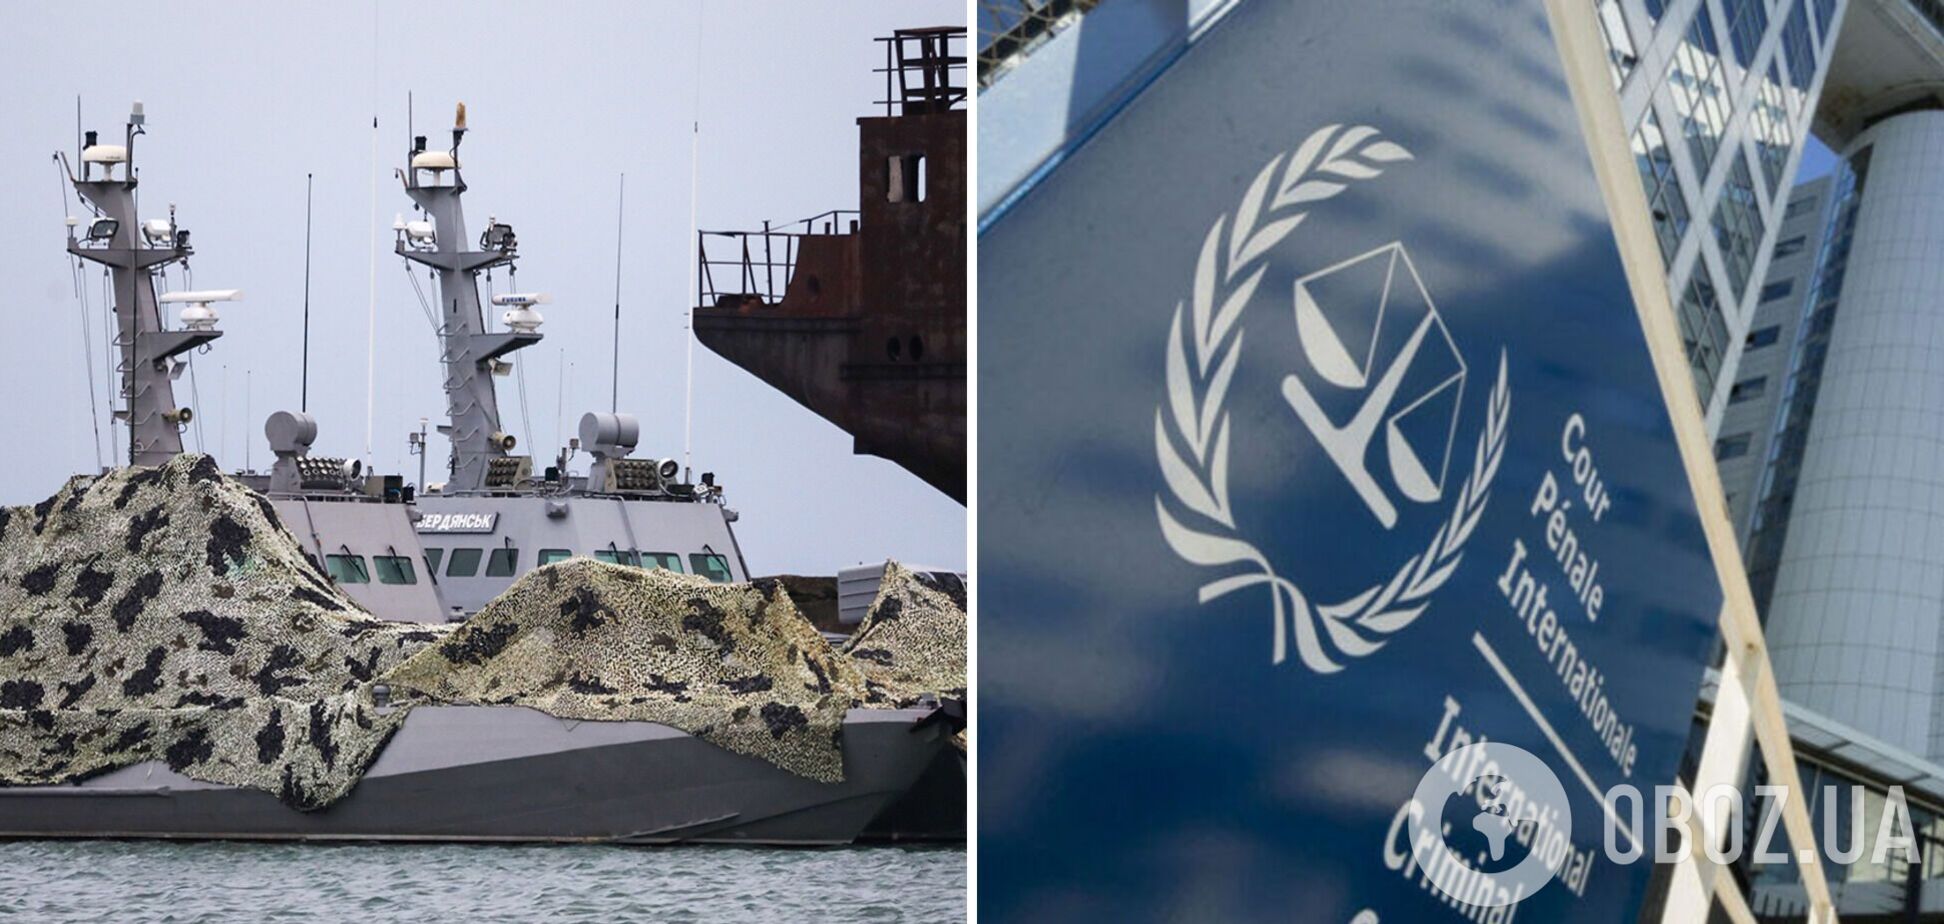 Україна здобула проміжну перемогу в морському арбітражі ООН у справі про захоплення моряків у Керченській протоці